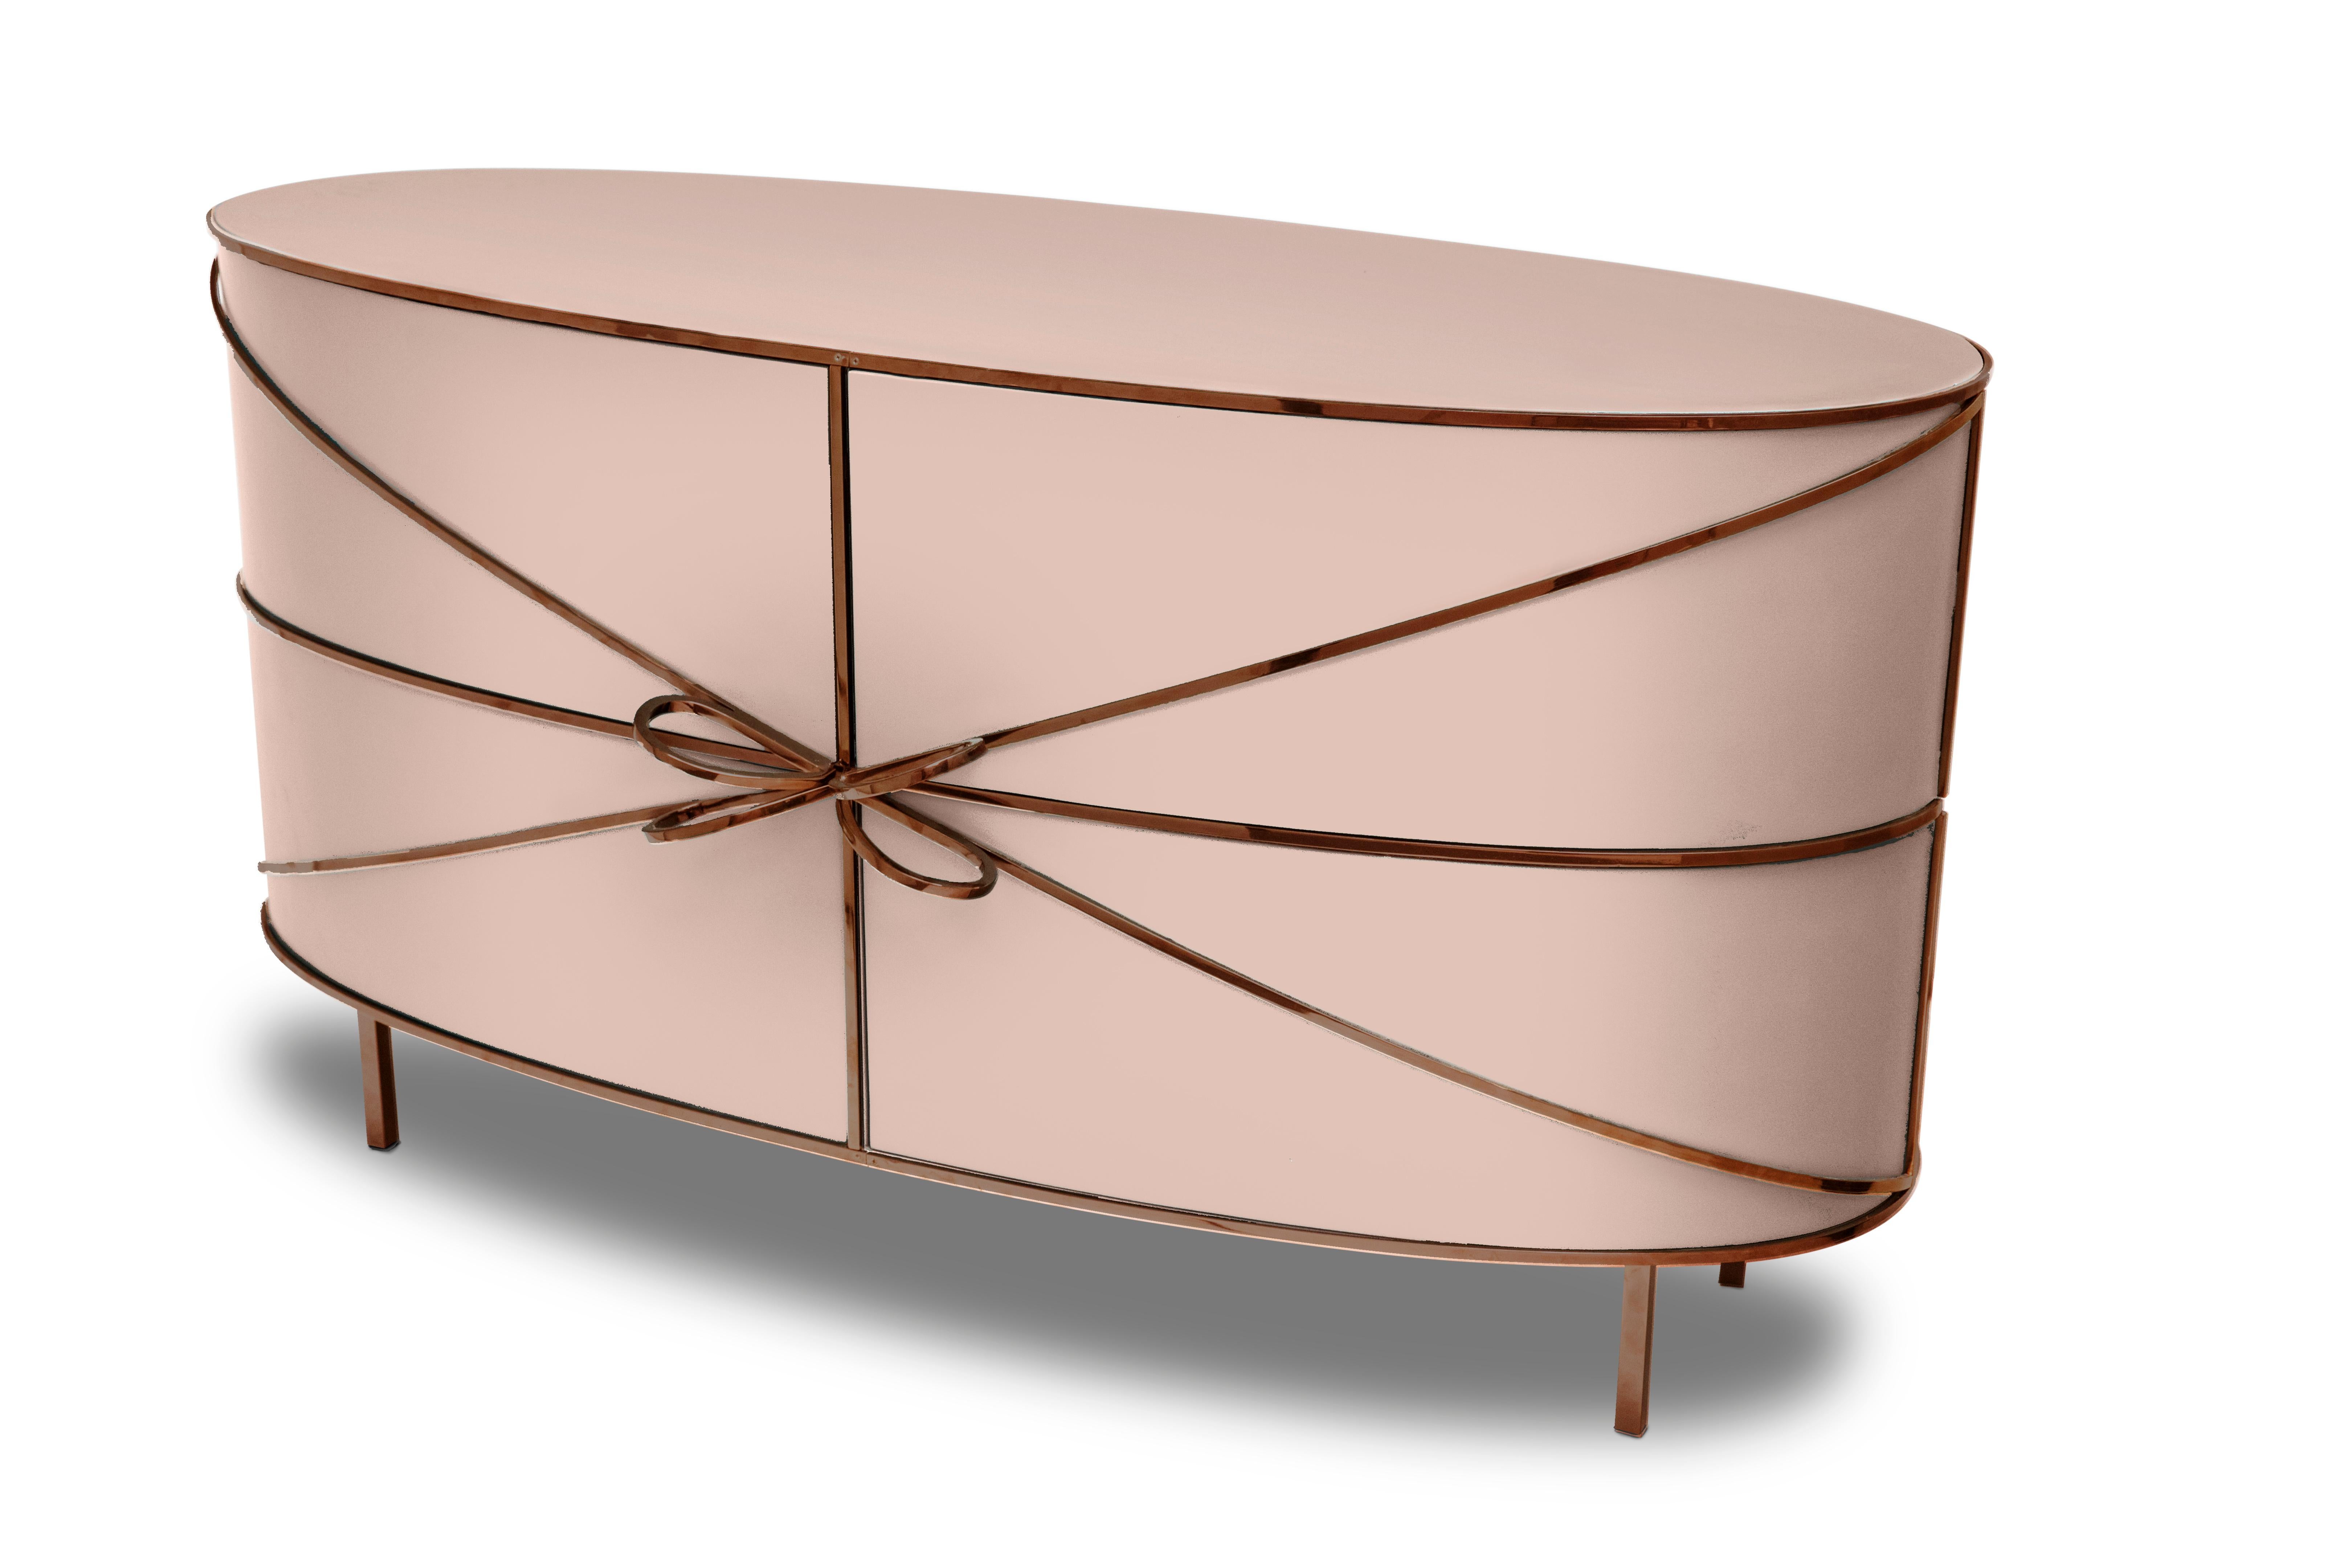 88 Secrets Sideboard Pink with Rose Gold Trims de Nika Zupanc est un élégant meuble rose aux lignes sensuelles et féminines avec de luxueuses garnitures métalliques en or rose. Une pièce maîtresse dans tout espace intérieur !

Nika Zupanc, designer